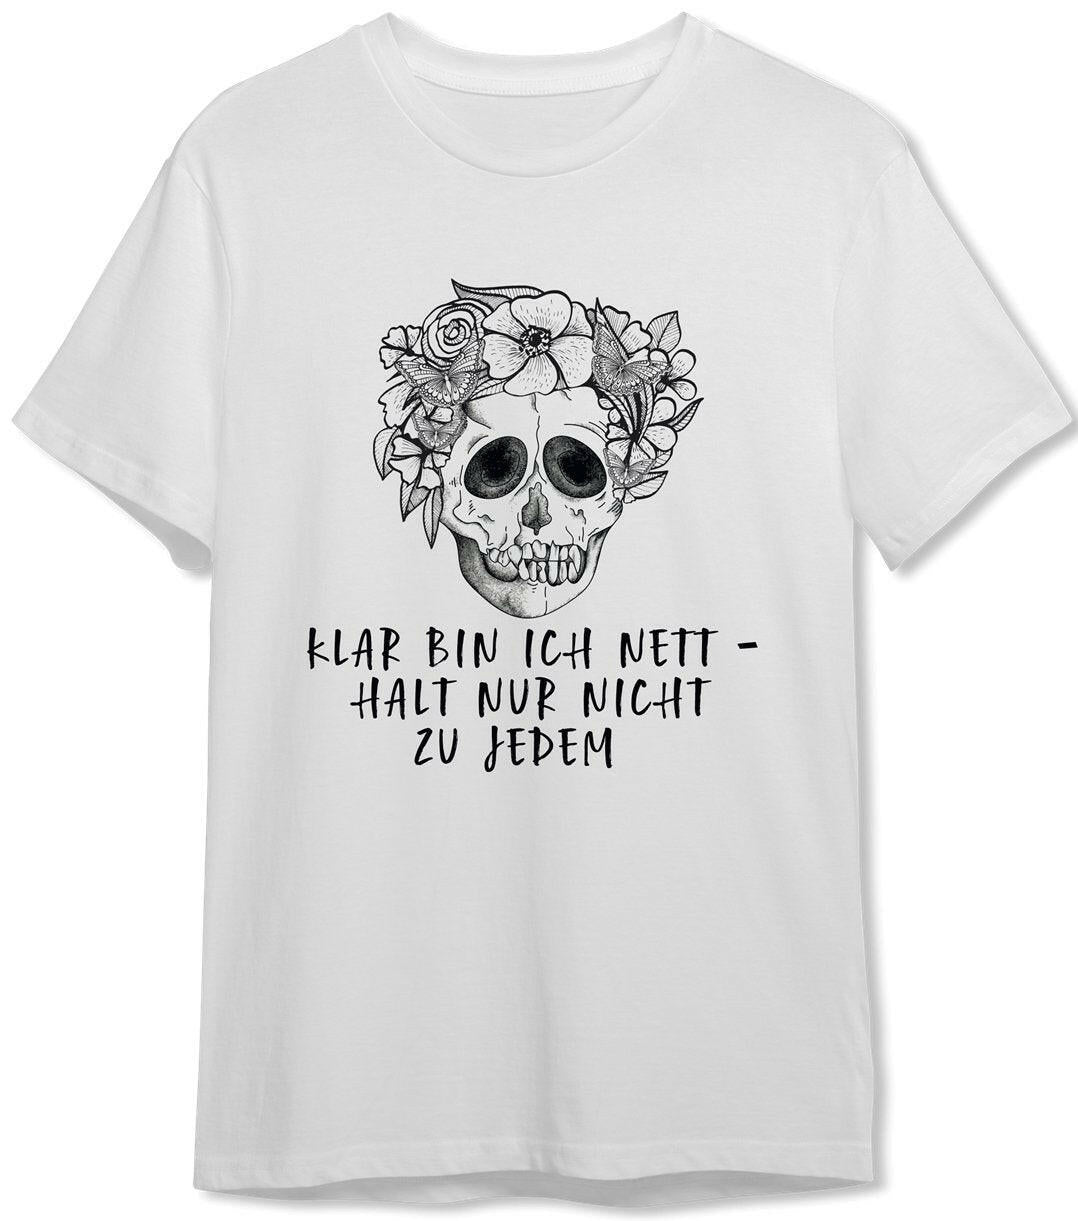 Bild: T-Shirt Herren - Klar bin ich nett - halt nur nicht zu jedem - Totenkopf Geschenkidee